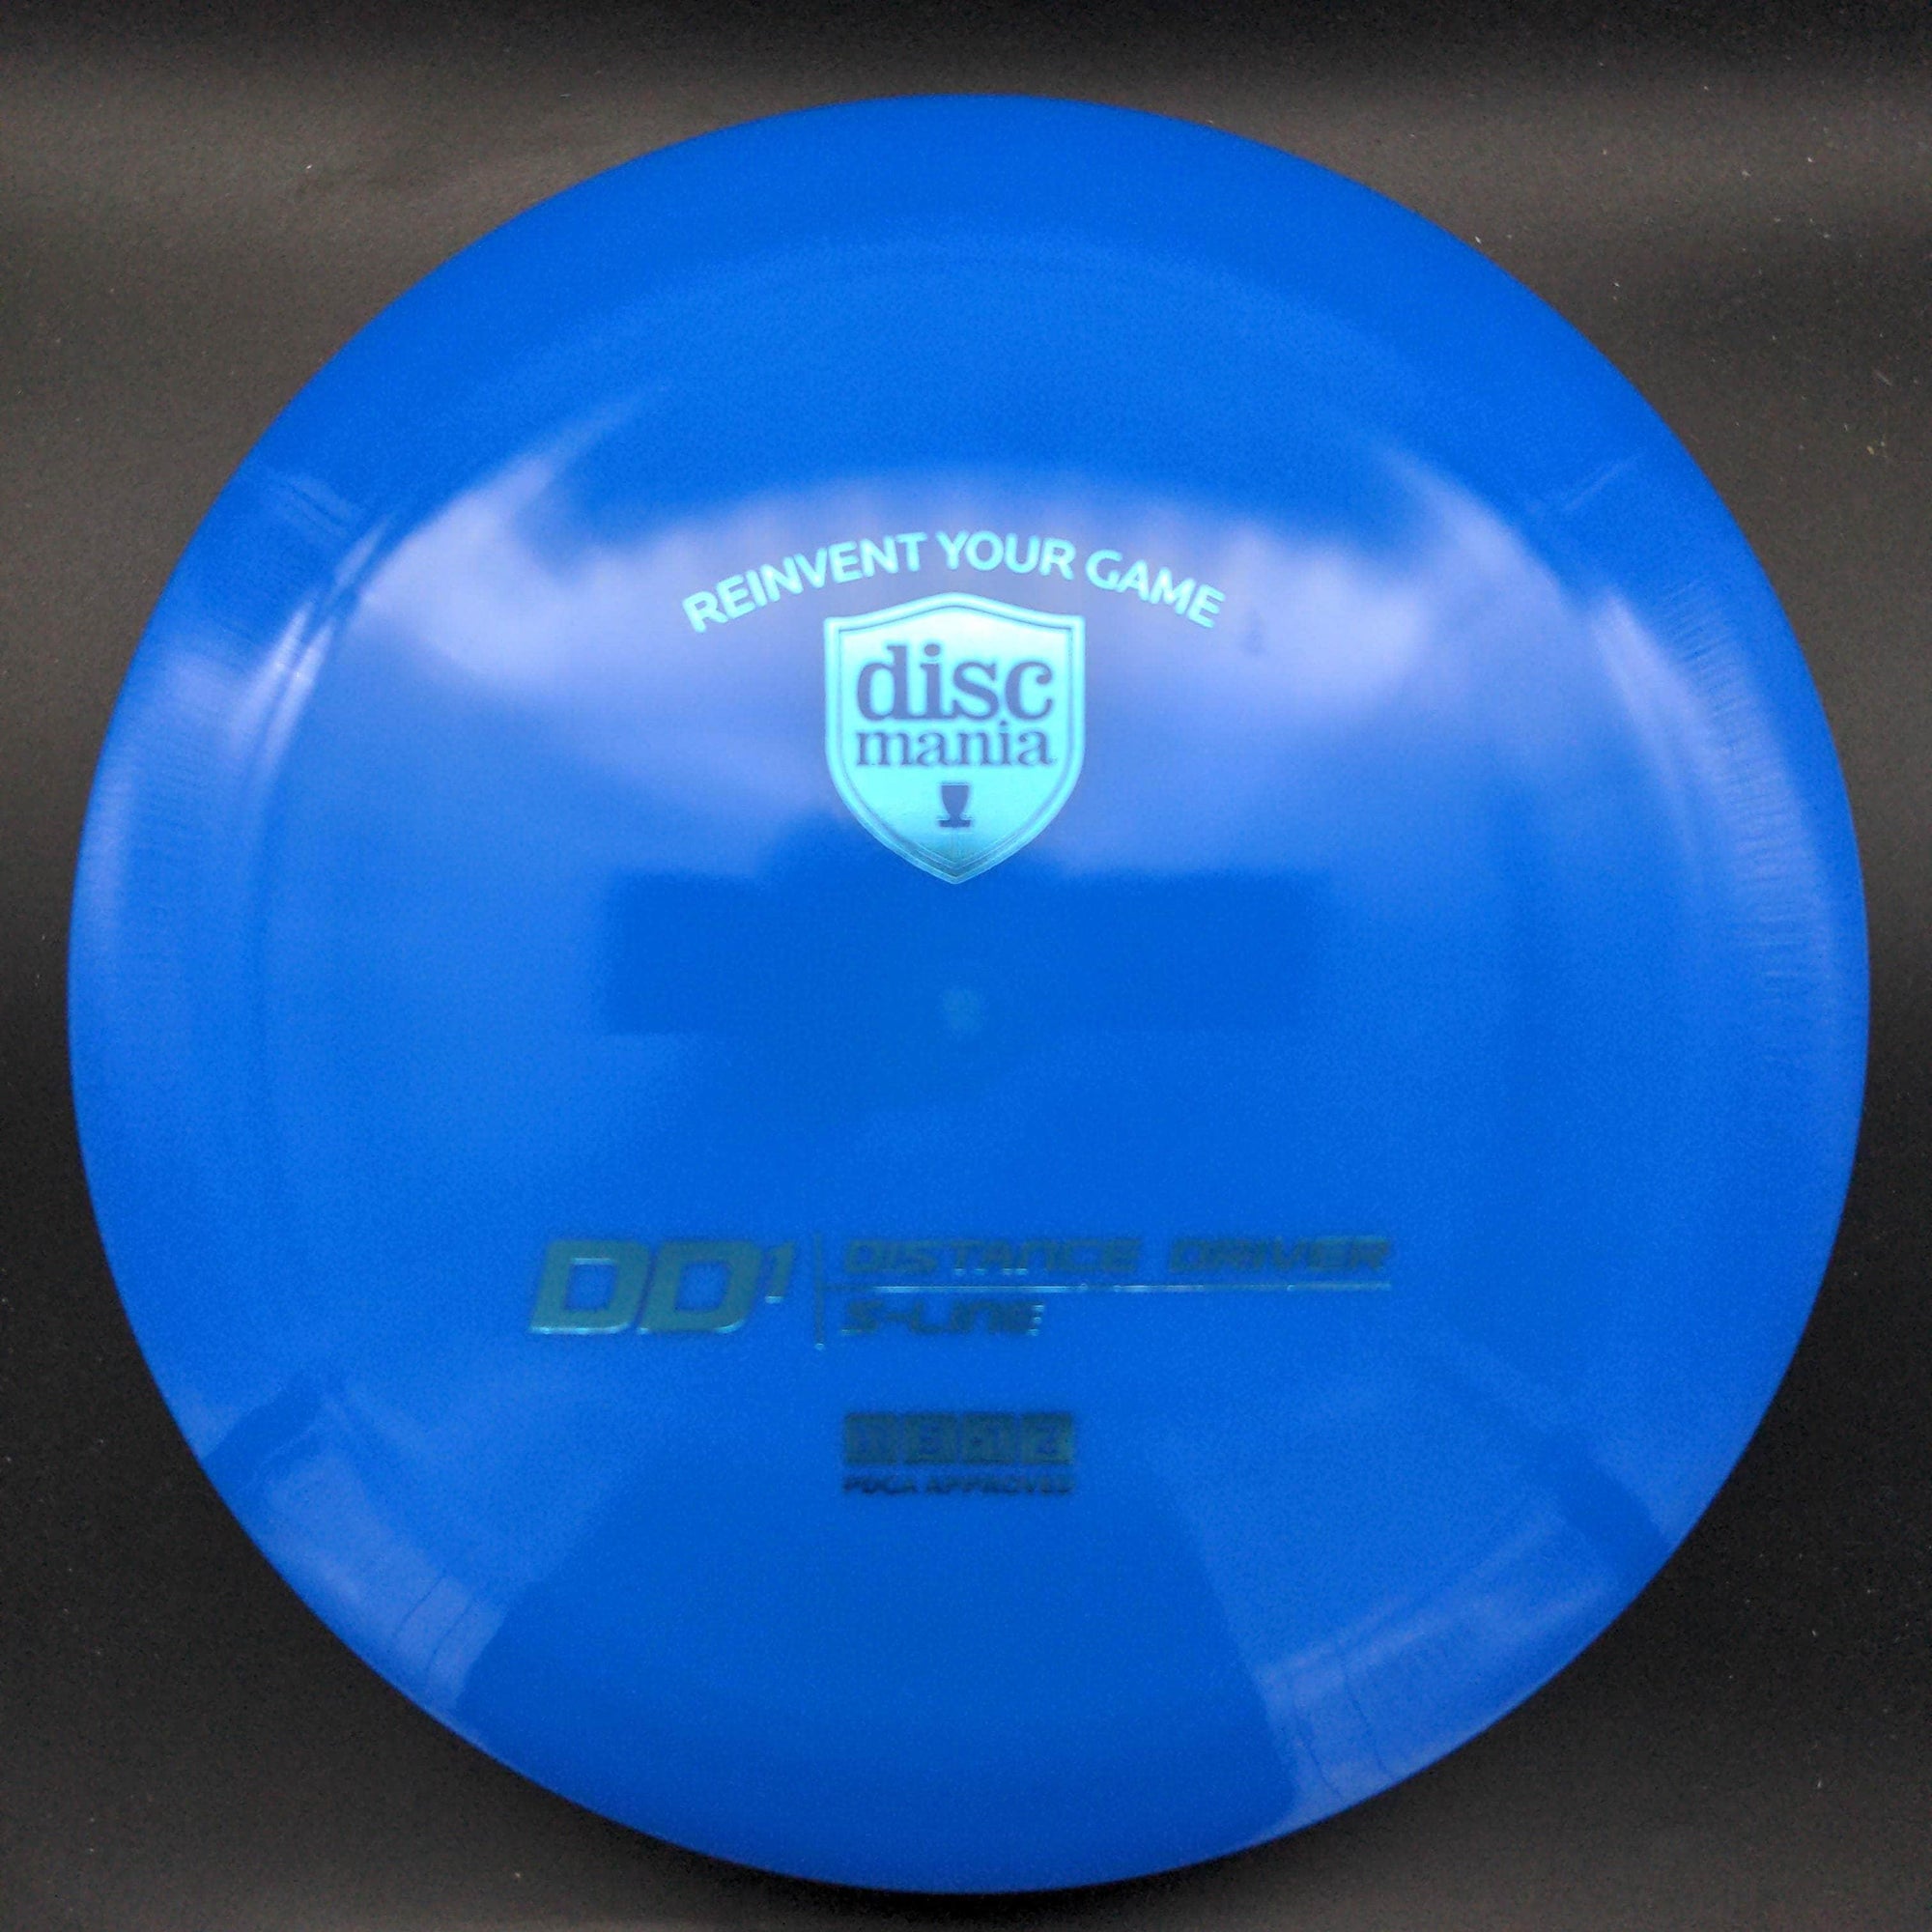 Discmania Distance Driver DD1, S - Line Plastic